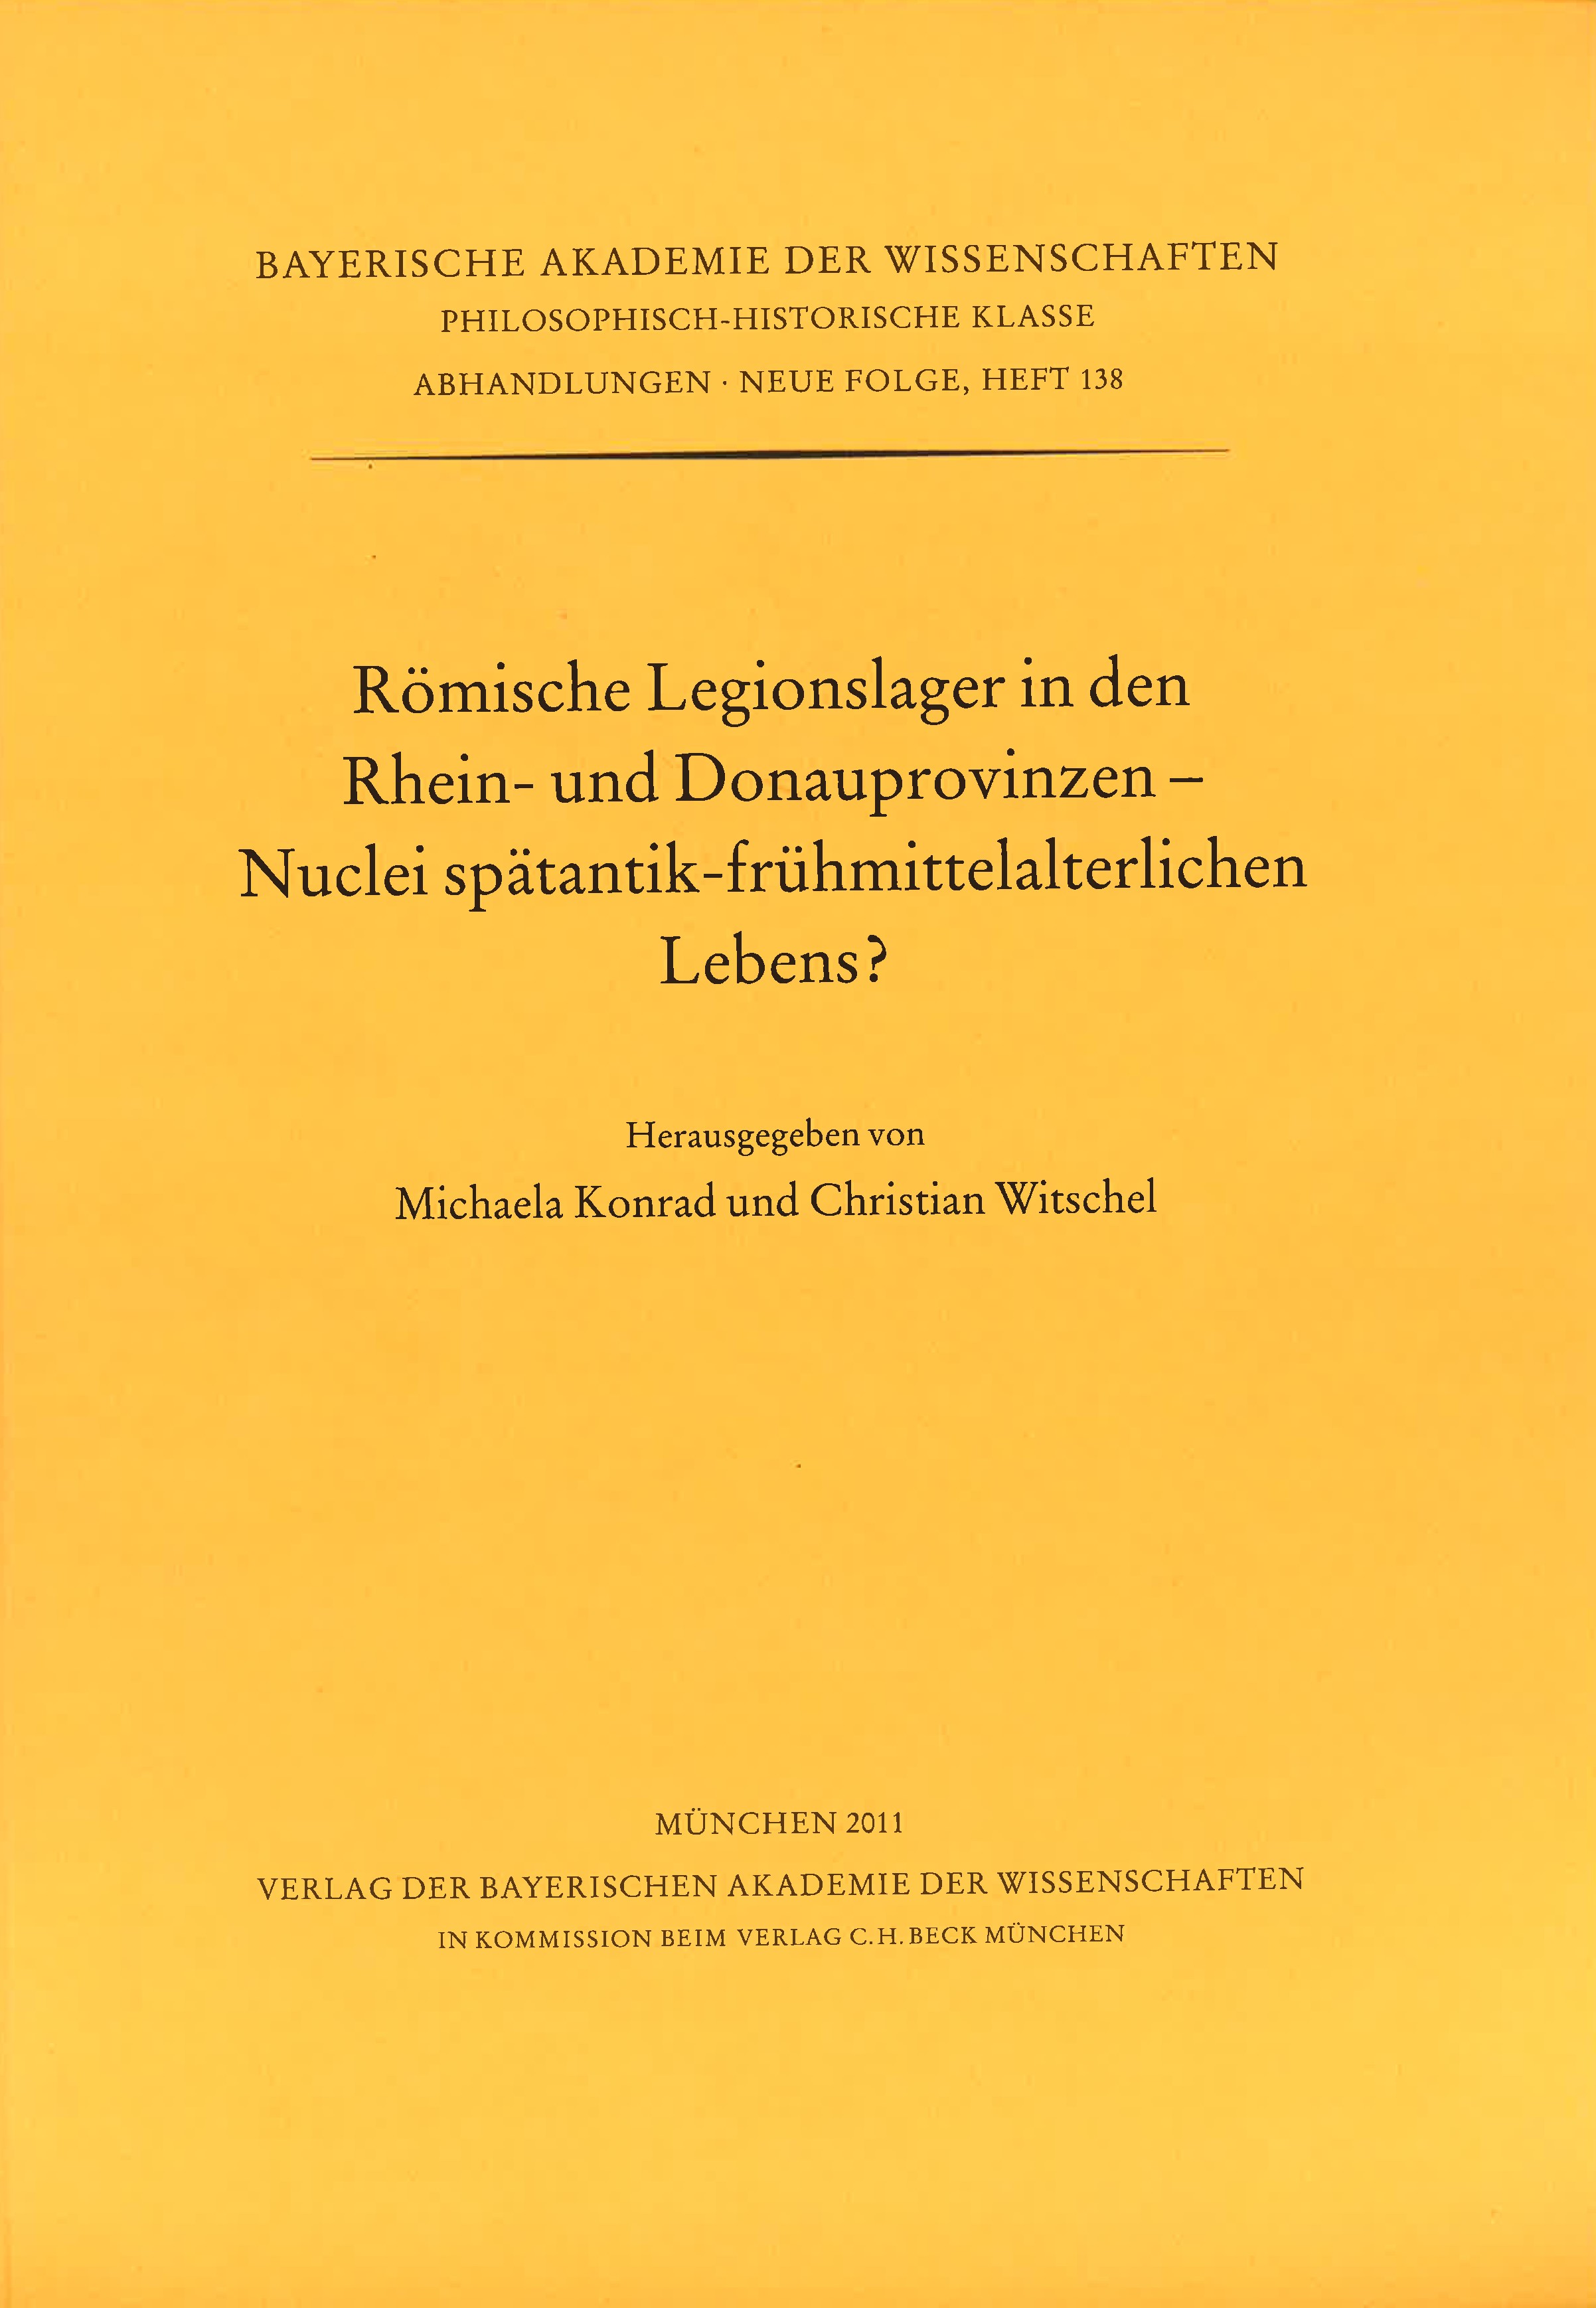 Cover: Herausgegeben von Michaela Konrad und Christian Witschel, Römische Legionslager in den Rhein- und Donauprovinzen - Nuclei spätantik-frühmittelalterlichen Lebens